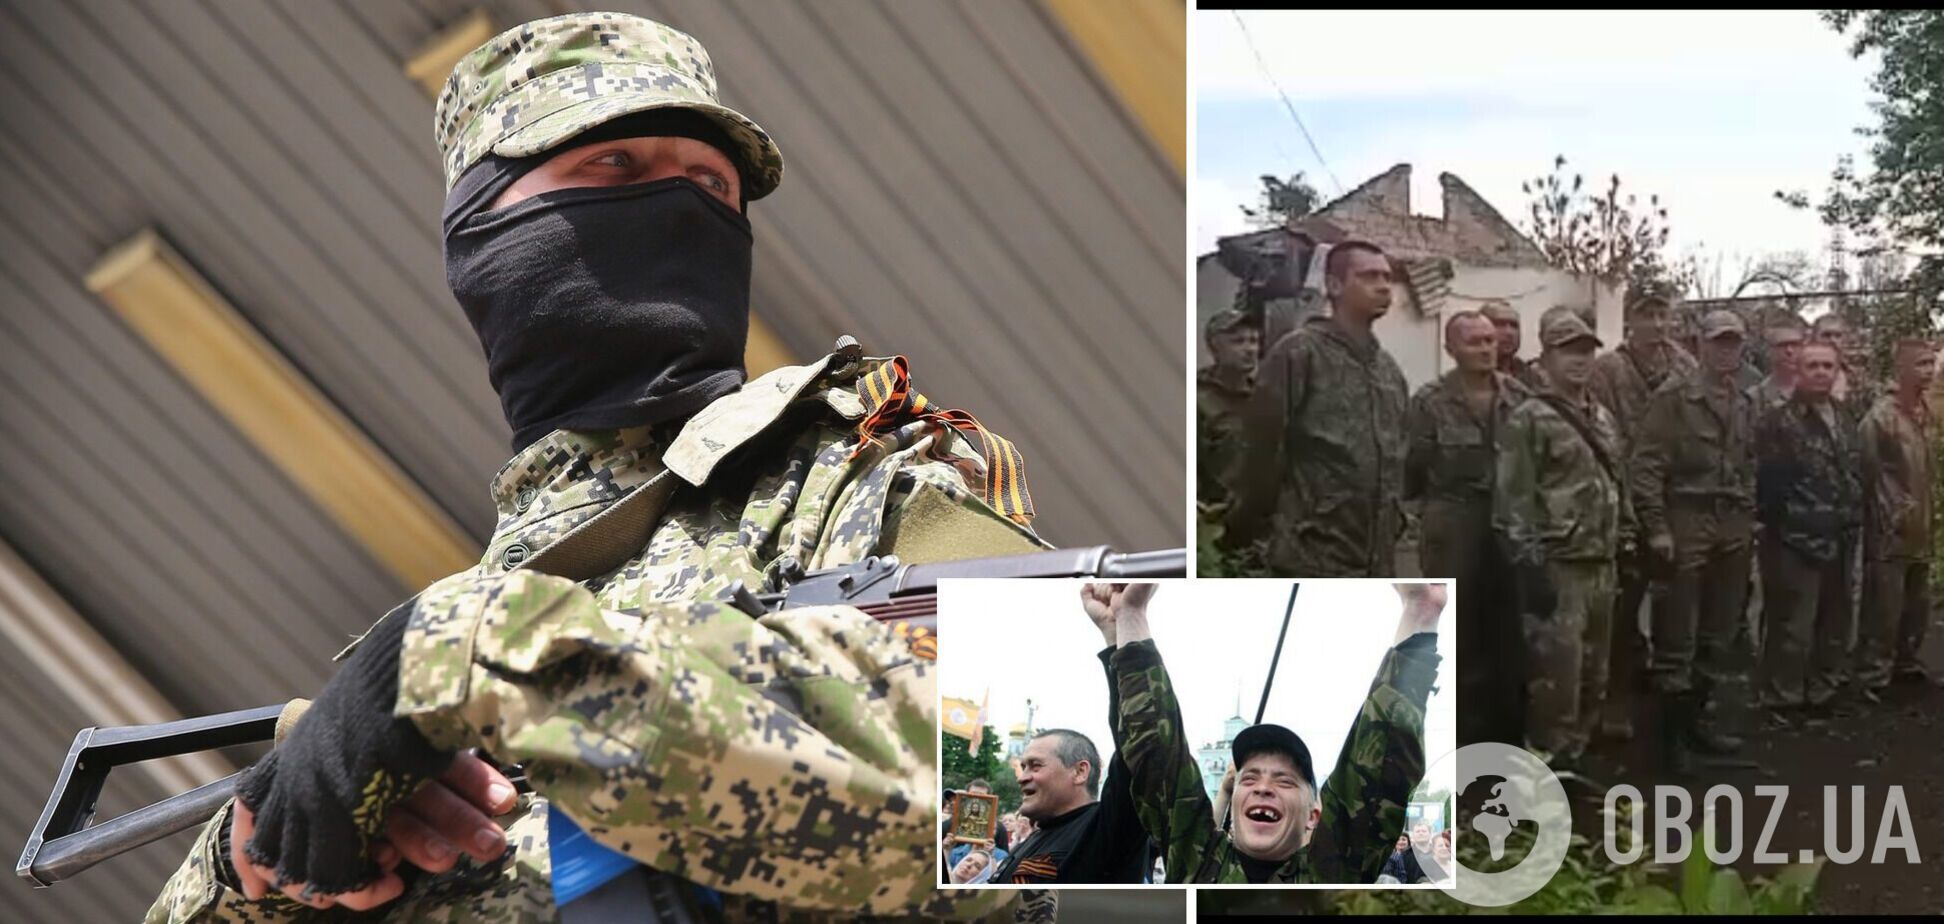 Мобилизированные в 'ЛНР' отказались воевать за 'ДНР': заявили, что еще 3 июля отметили 'день победы'. Видео